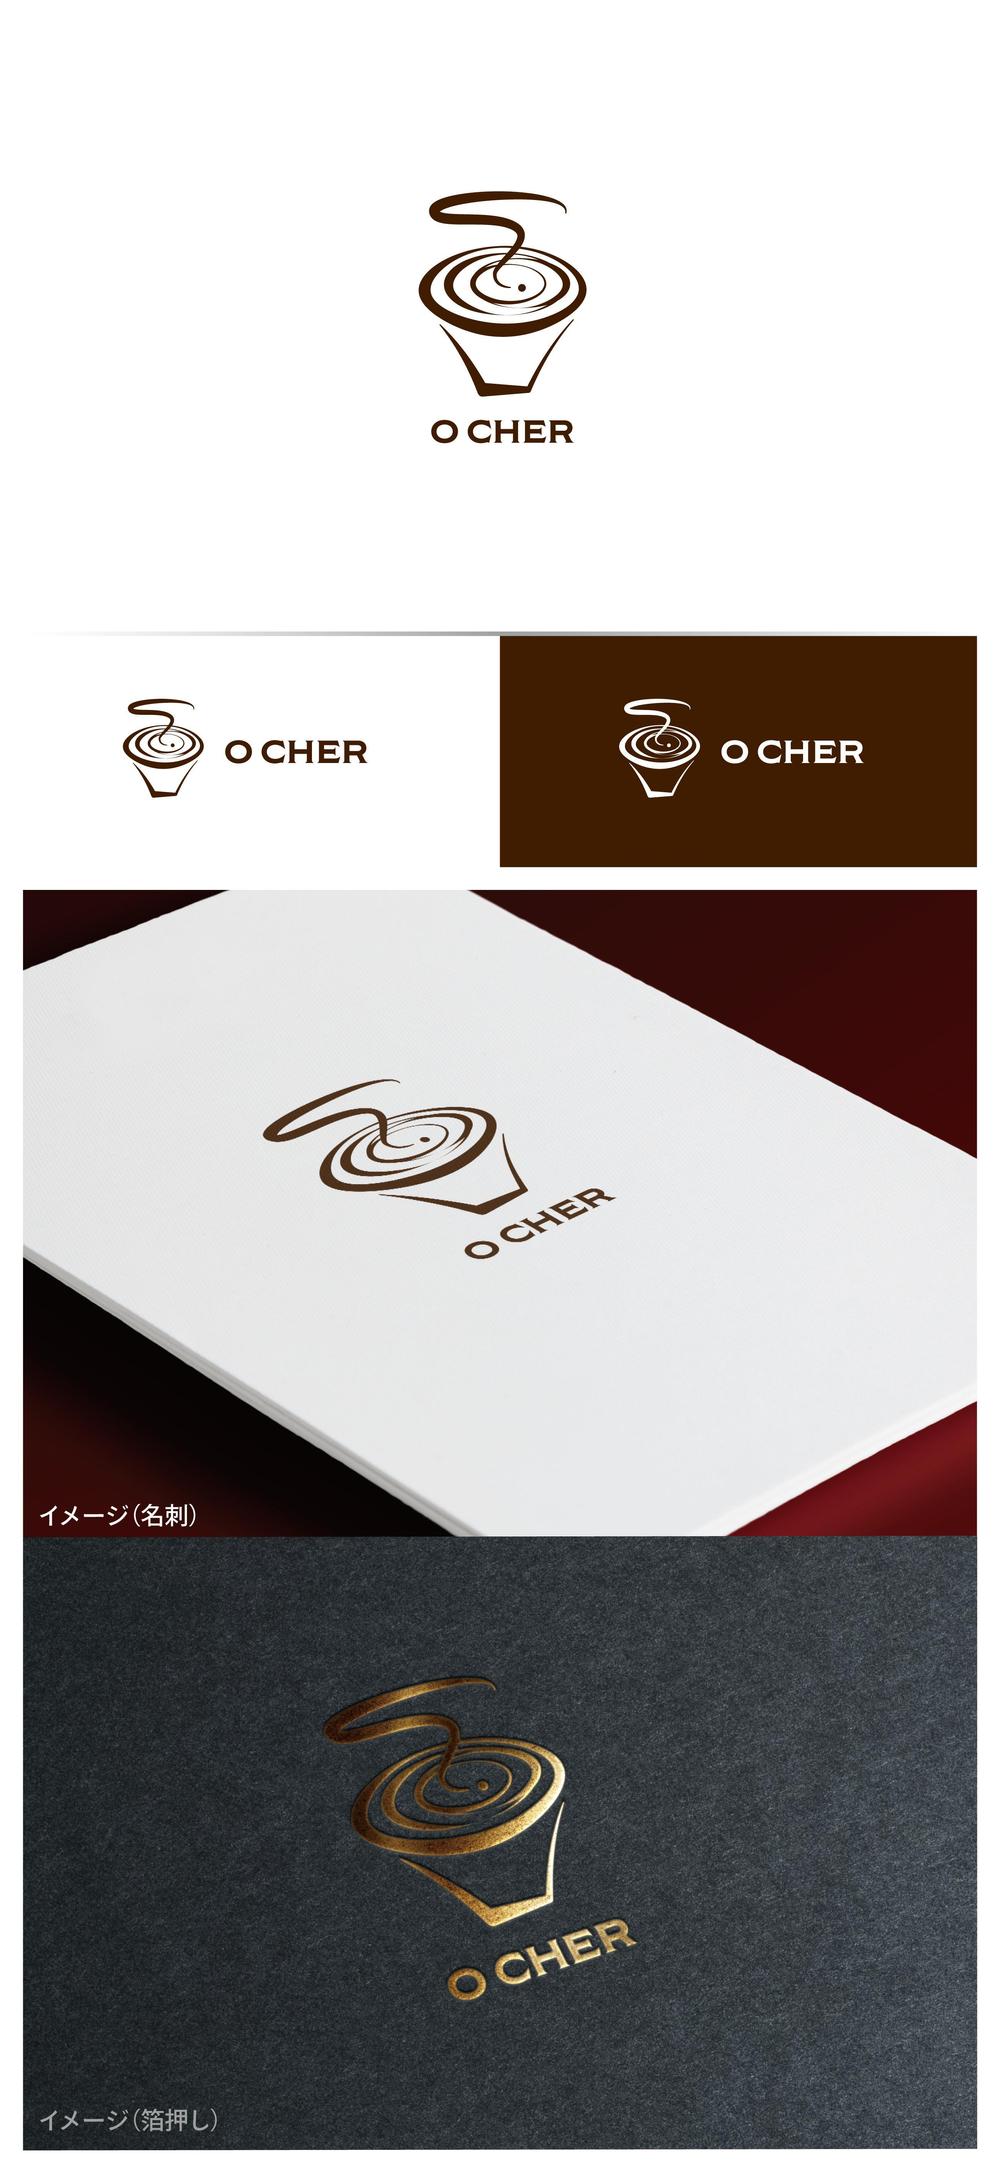 O CHER_logo02_01.jpg